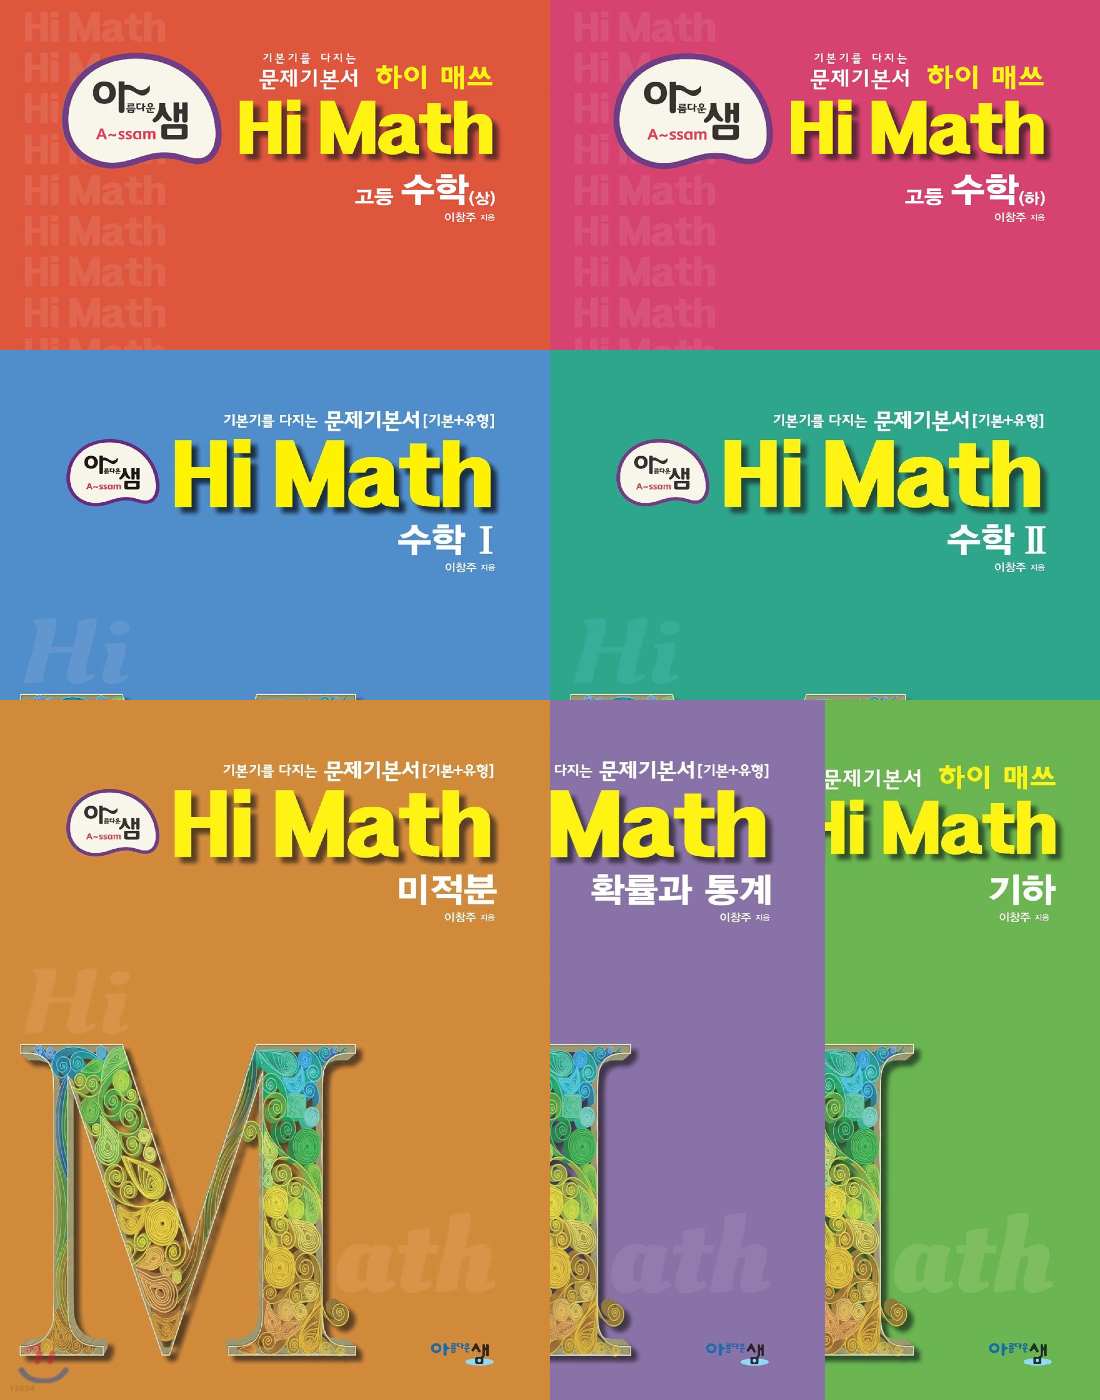 아름다운샘 하이매쓰(HI MATH) 고등수학 상, 고등수학 하, 수학1, 수학2, 미적분, 확률과통계, 기하